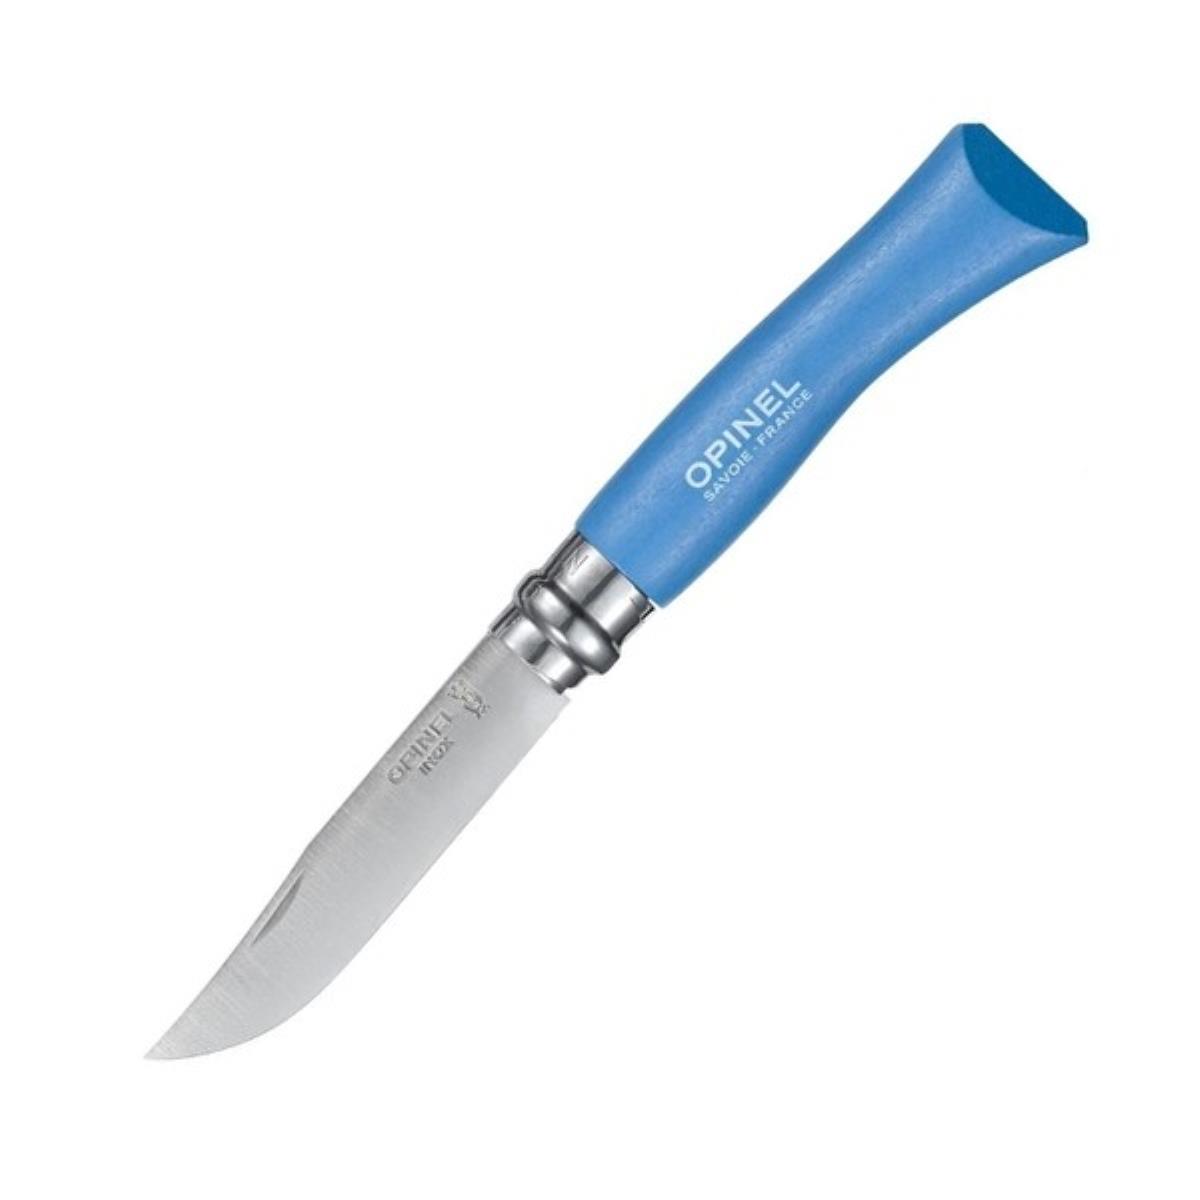 Нож №7 VRI Colored Tradition Sky blue нерж. сталь, рукоять граб, длина клинка8см (голубой) OPINEL филейный нож opinel